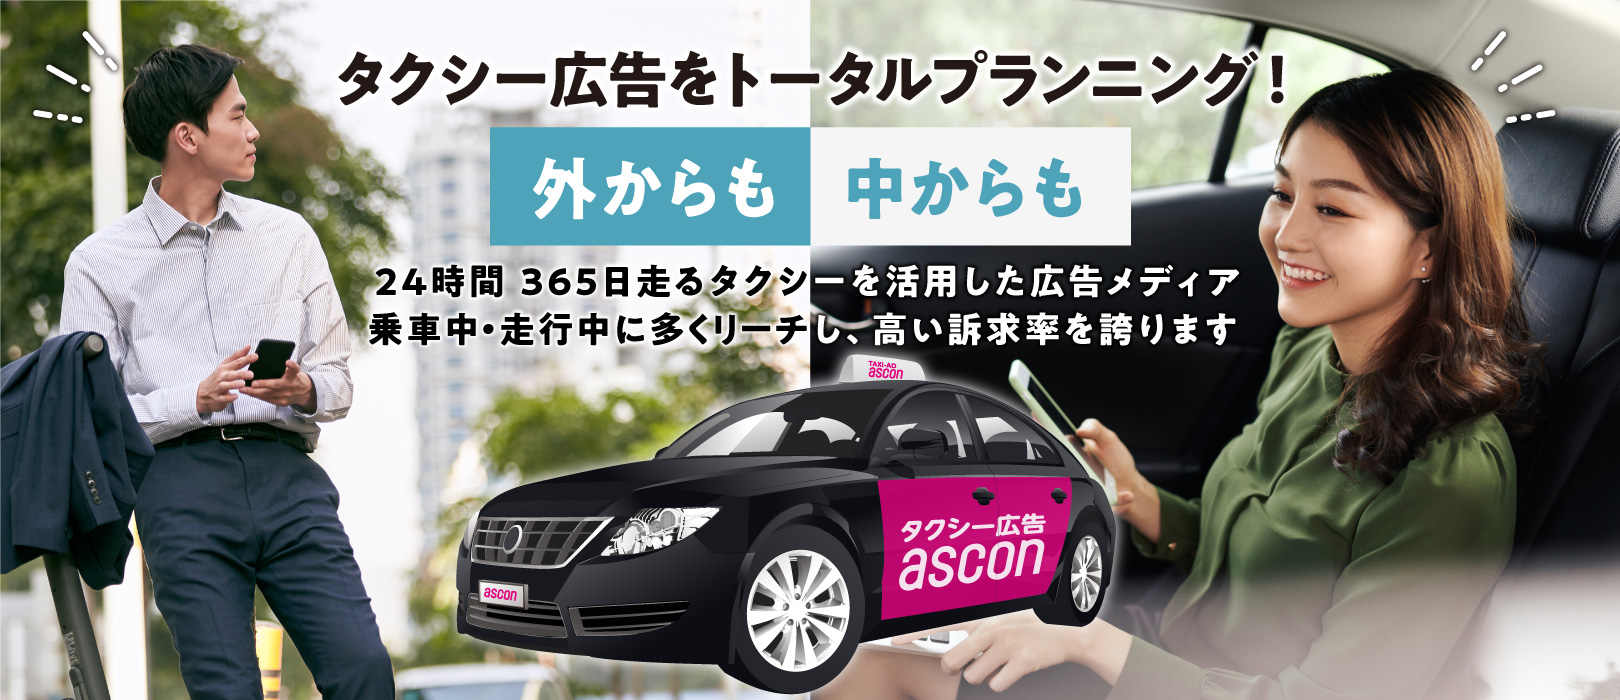 タクシー広告をトータルサポート